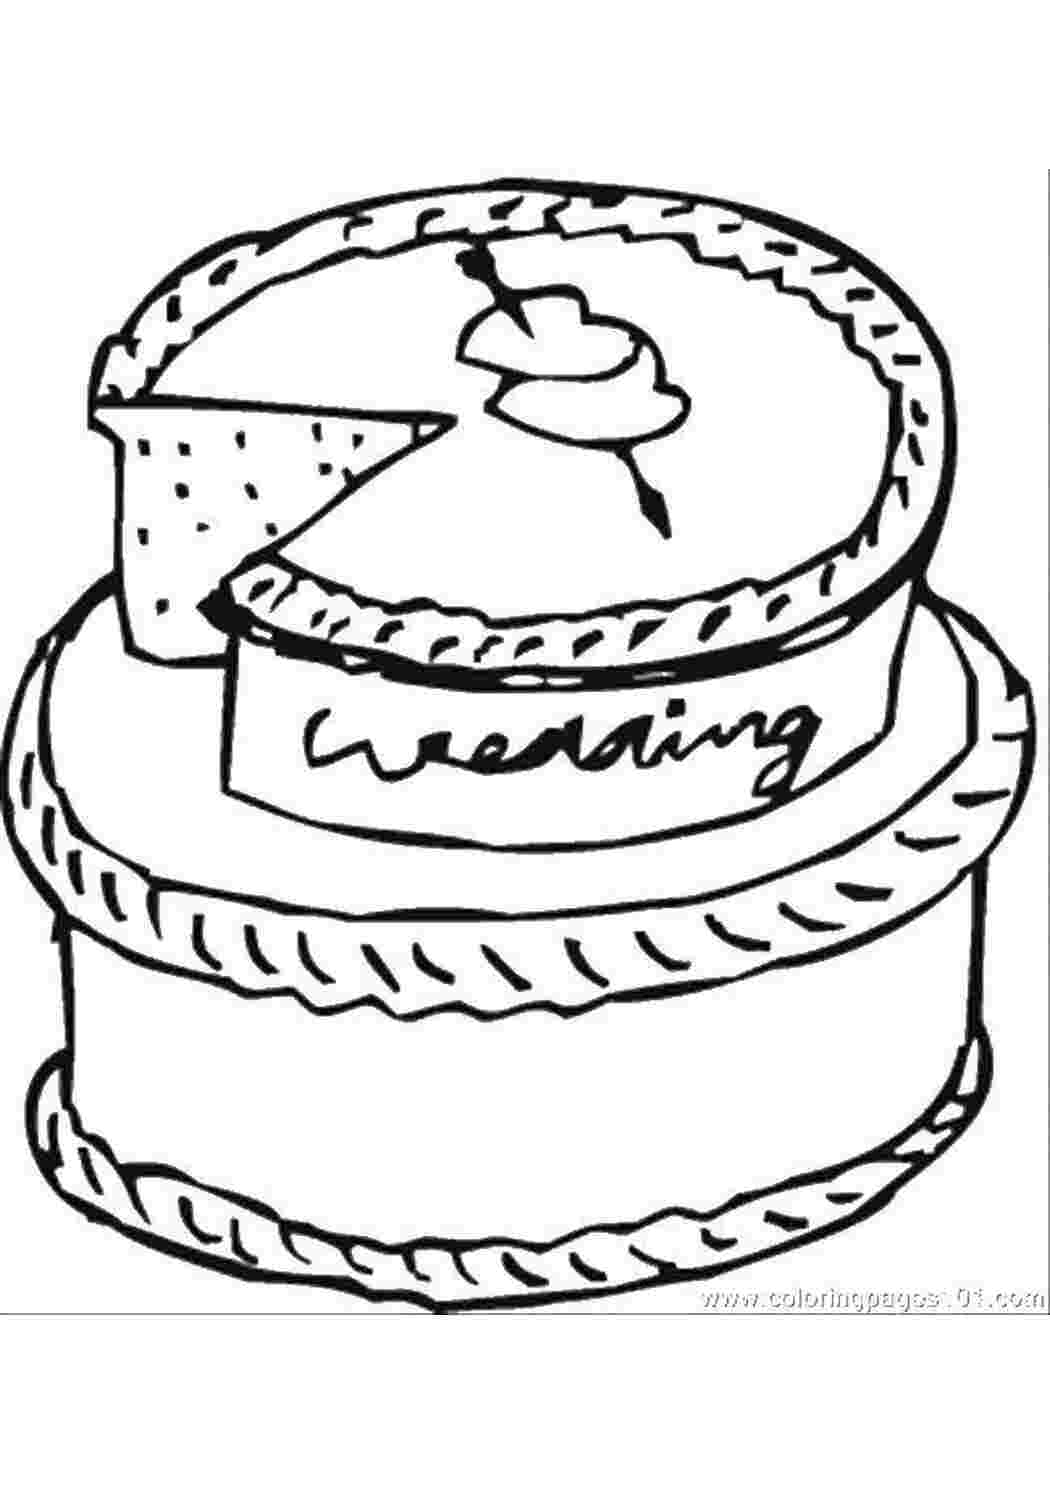 Раскраска свадебный торт